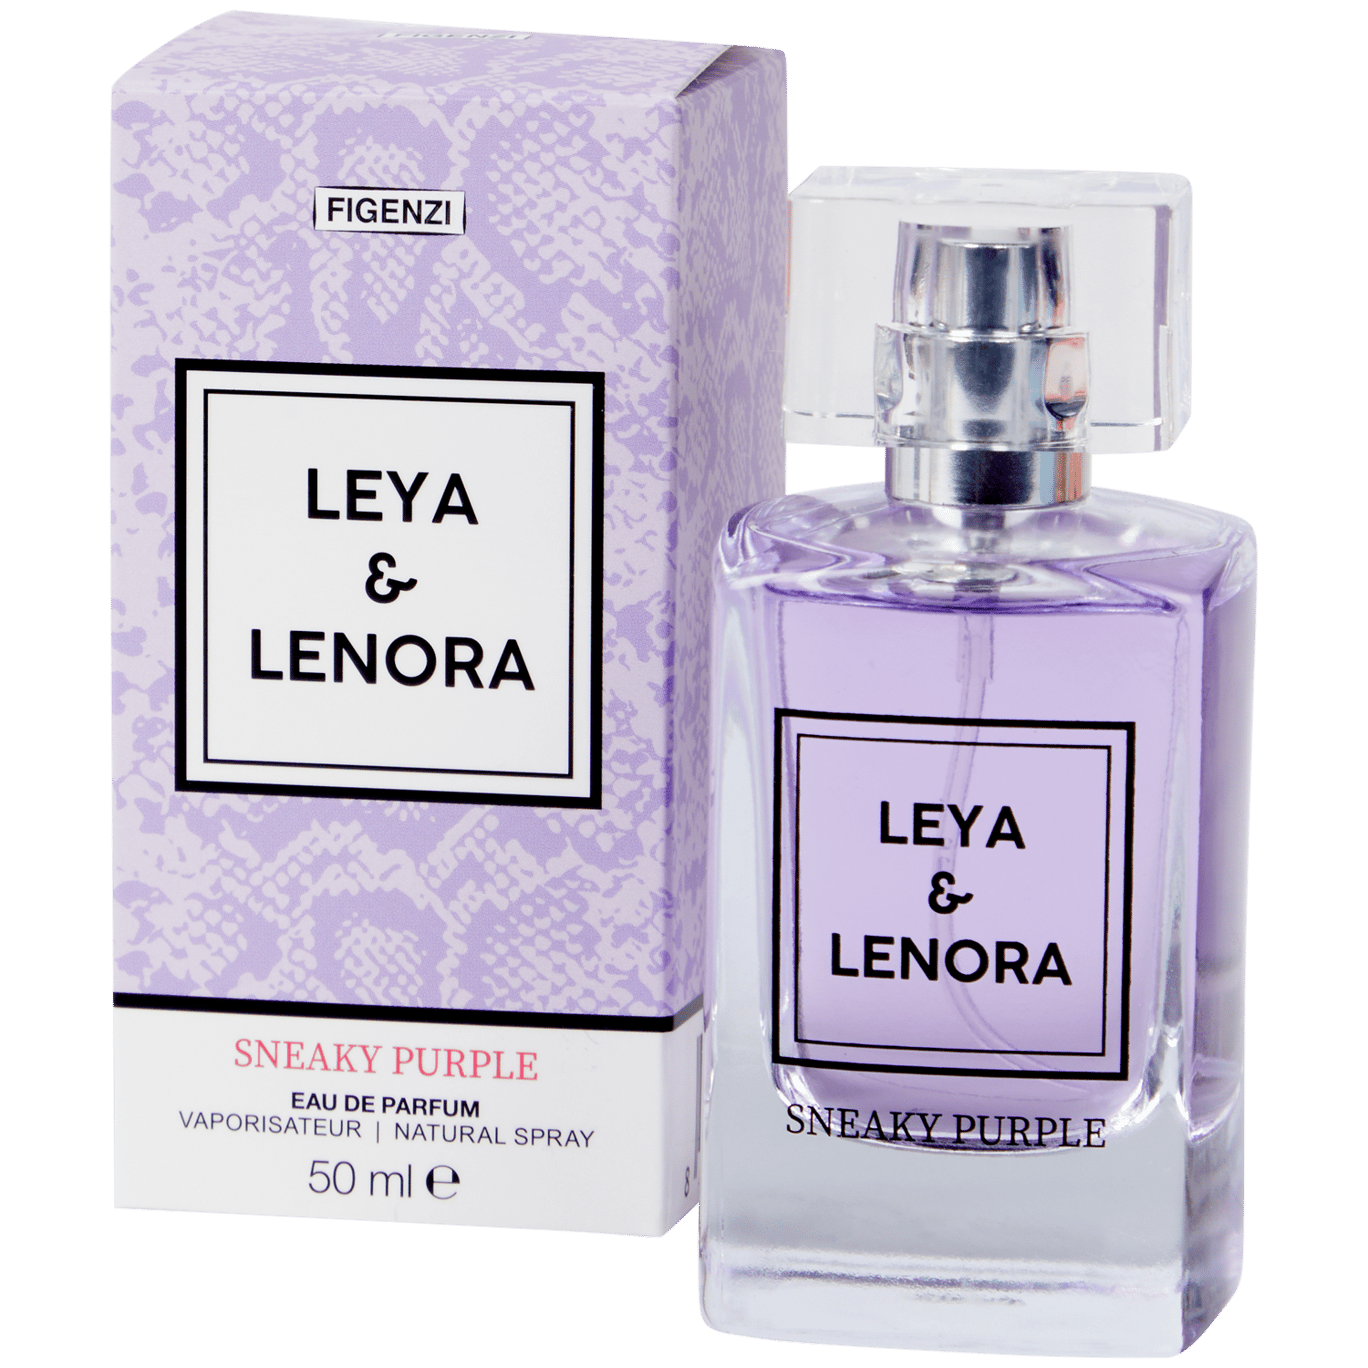 Parfémová voda Figenzi Leya & Lenora